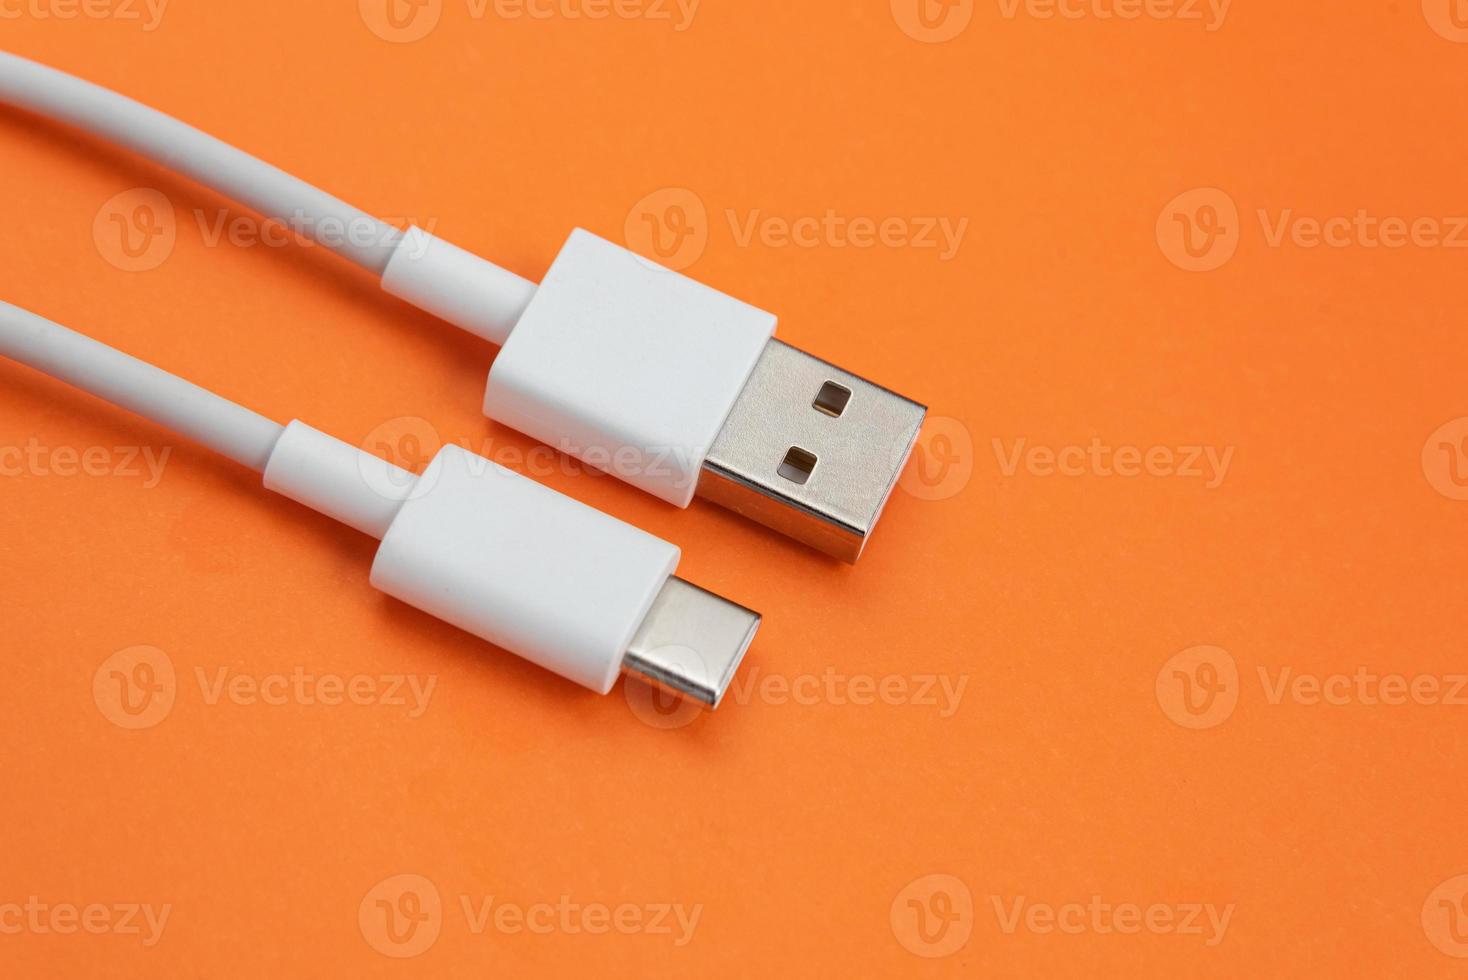 Cable USB tipo c sobre fondo naranja foto